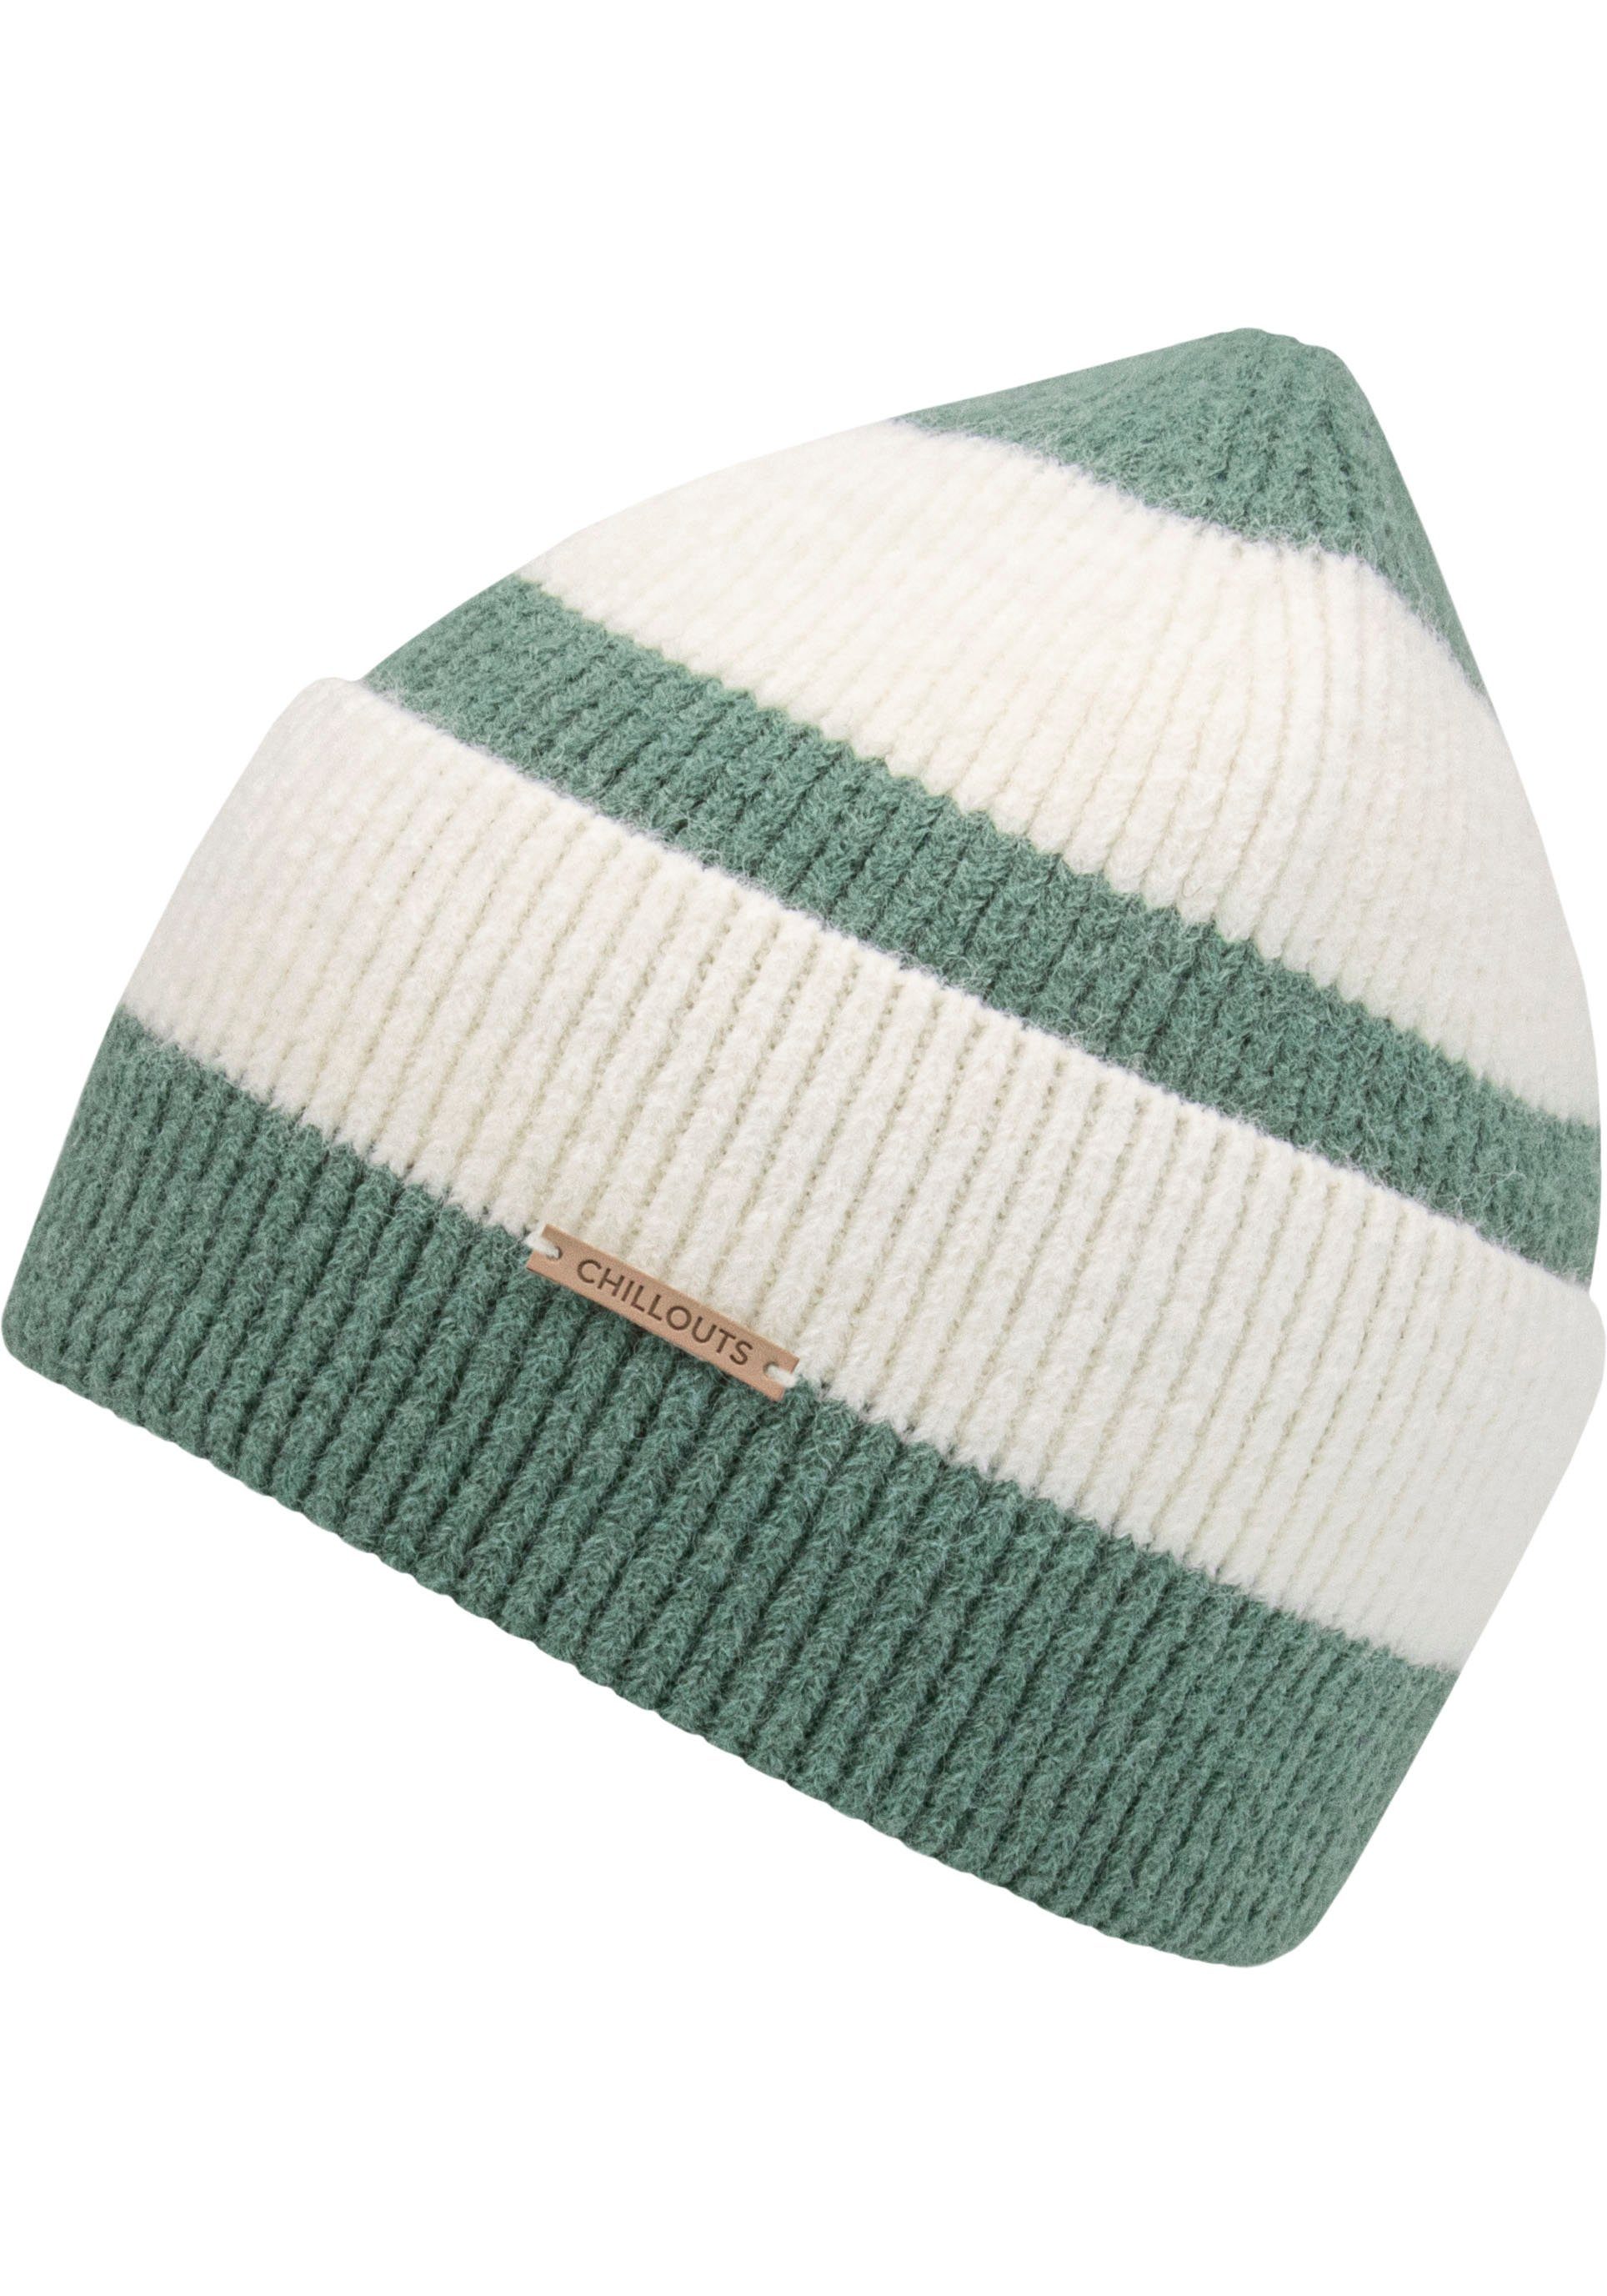 chillouts Strickmütze Susi Hat Im Blockstreifen-Look ash green stripes